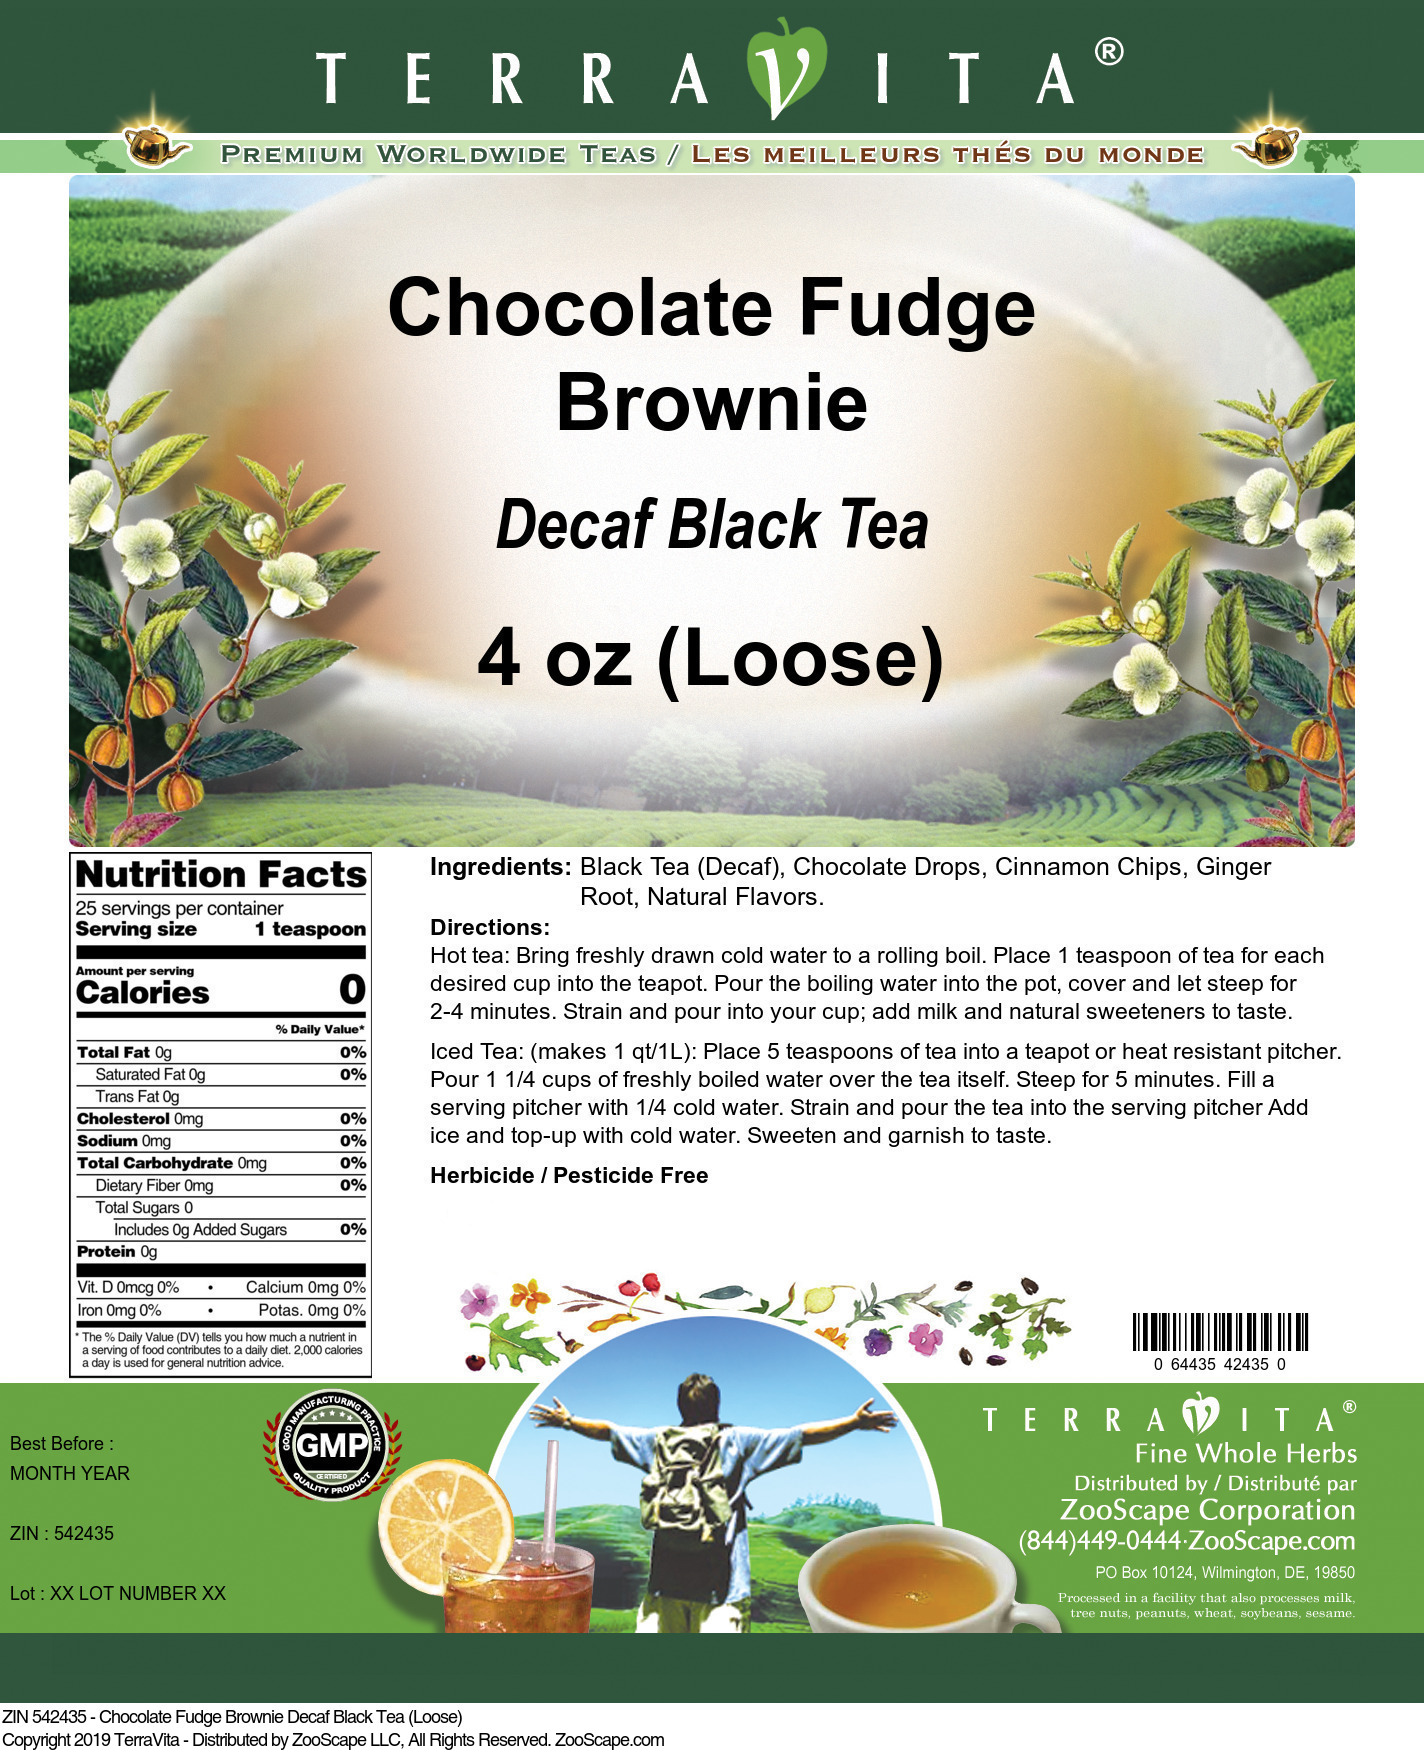 Chocolate Fudge Brownie Decaf Black Tea (Loose) - Label